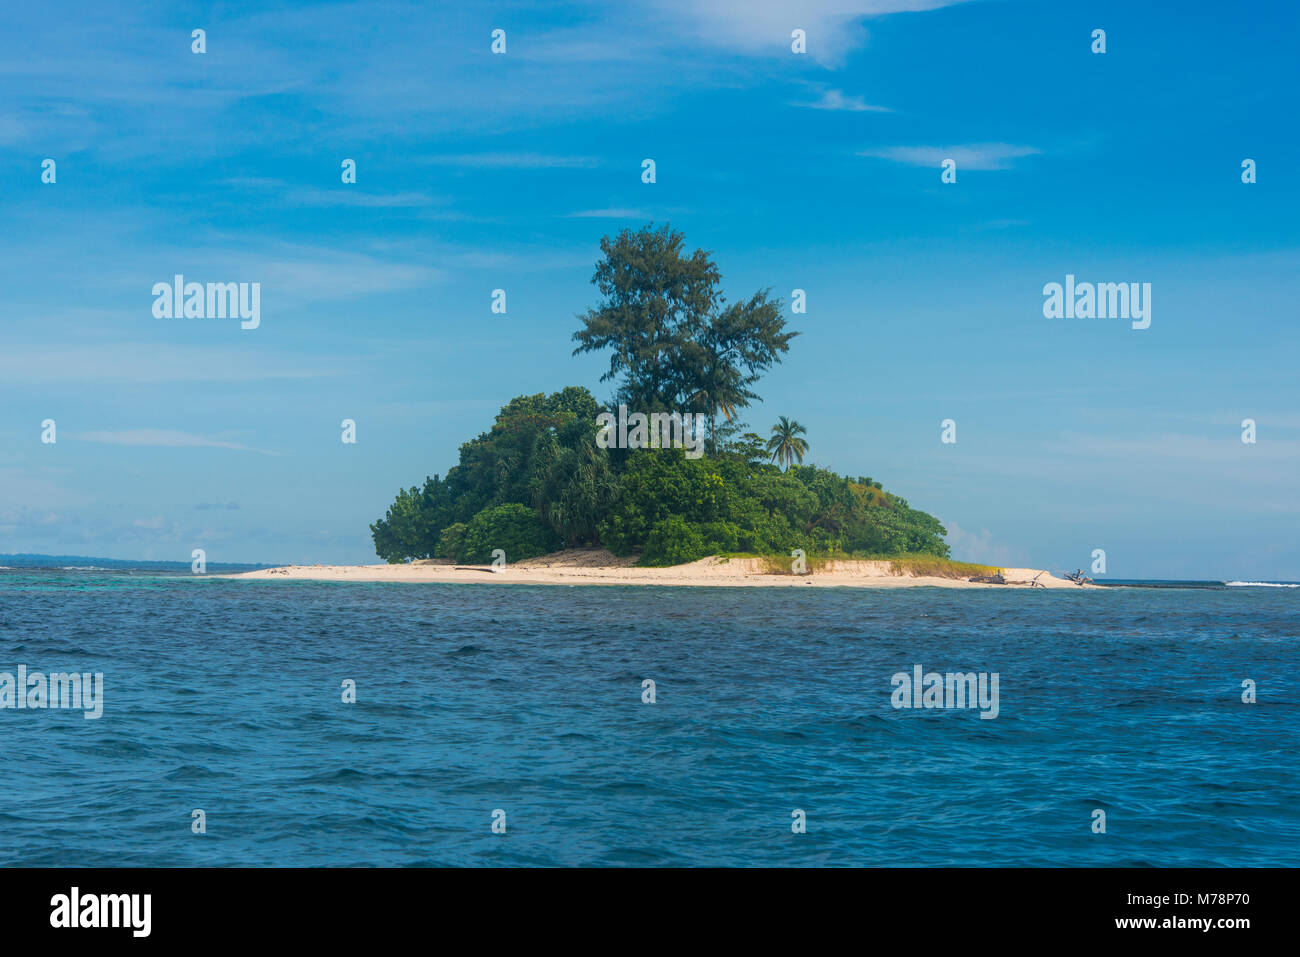 Die wunderschöne kleine Insel Ral vor der Küste von Kavieng, Neuirland, Papua-Neuguinea, Pazifik Stockfoto